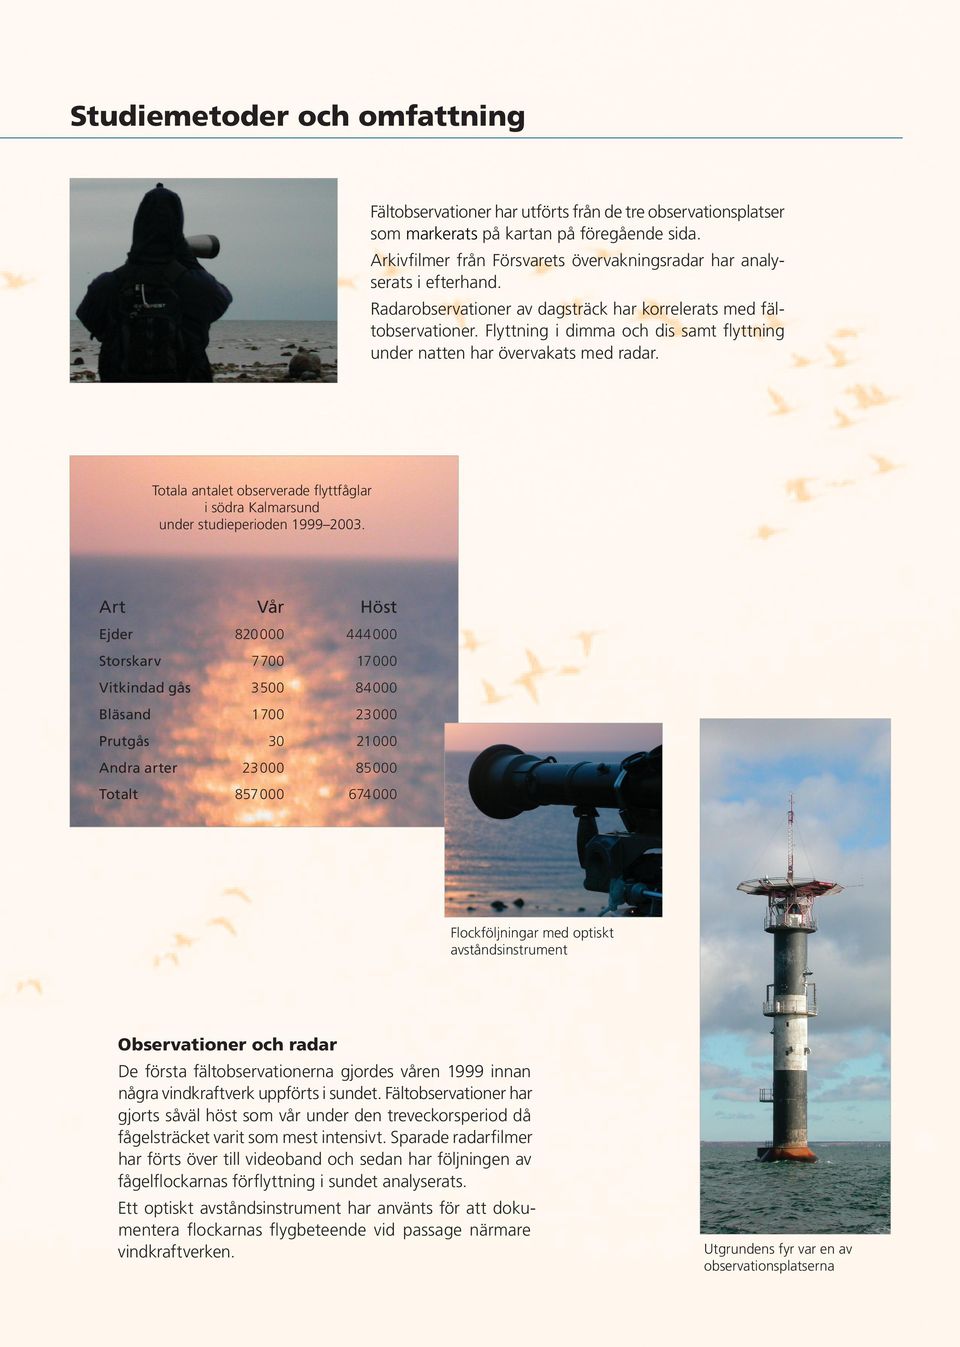 Flyttning i dimma och dis samt flyttning under natten har övervakats med radar. Totala antalet observerade flyttfåglar i södra Kalmarsund under studieperioden 1999 03.